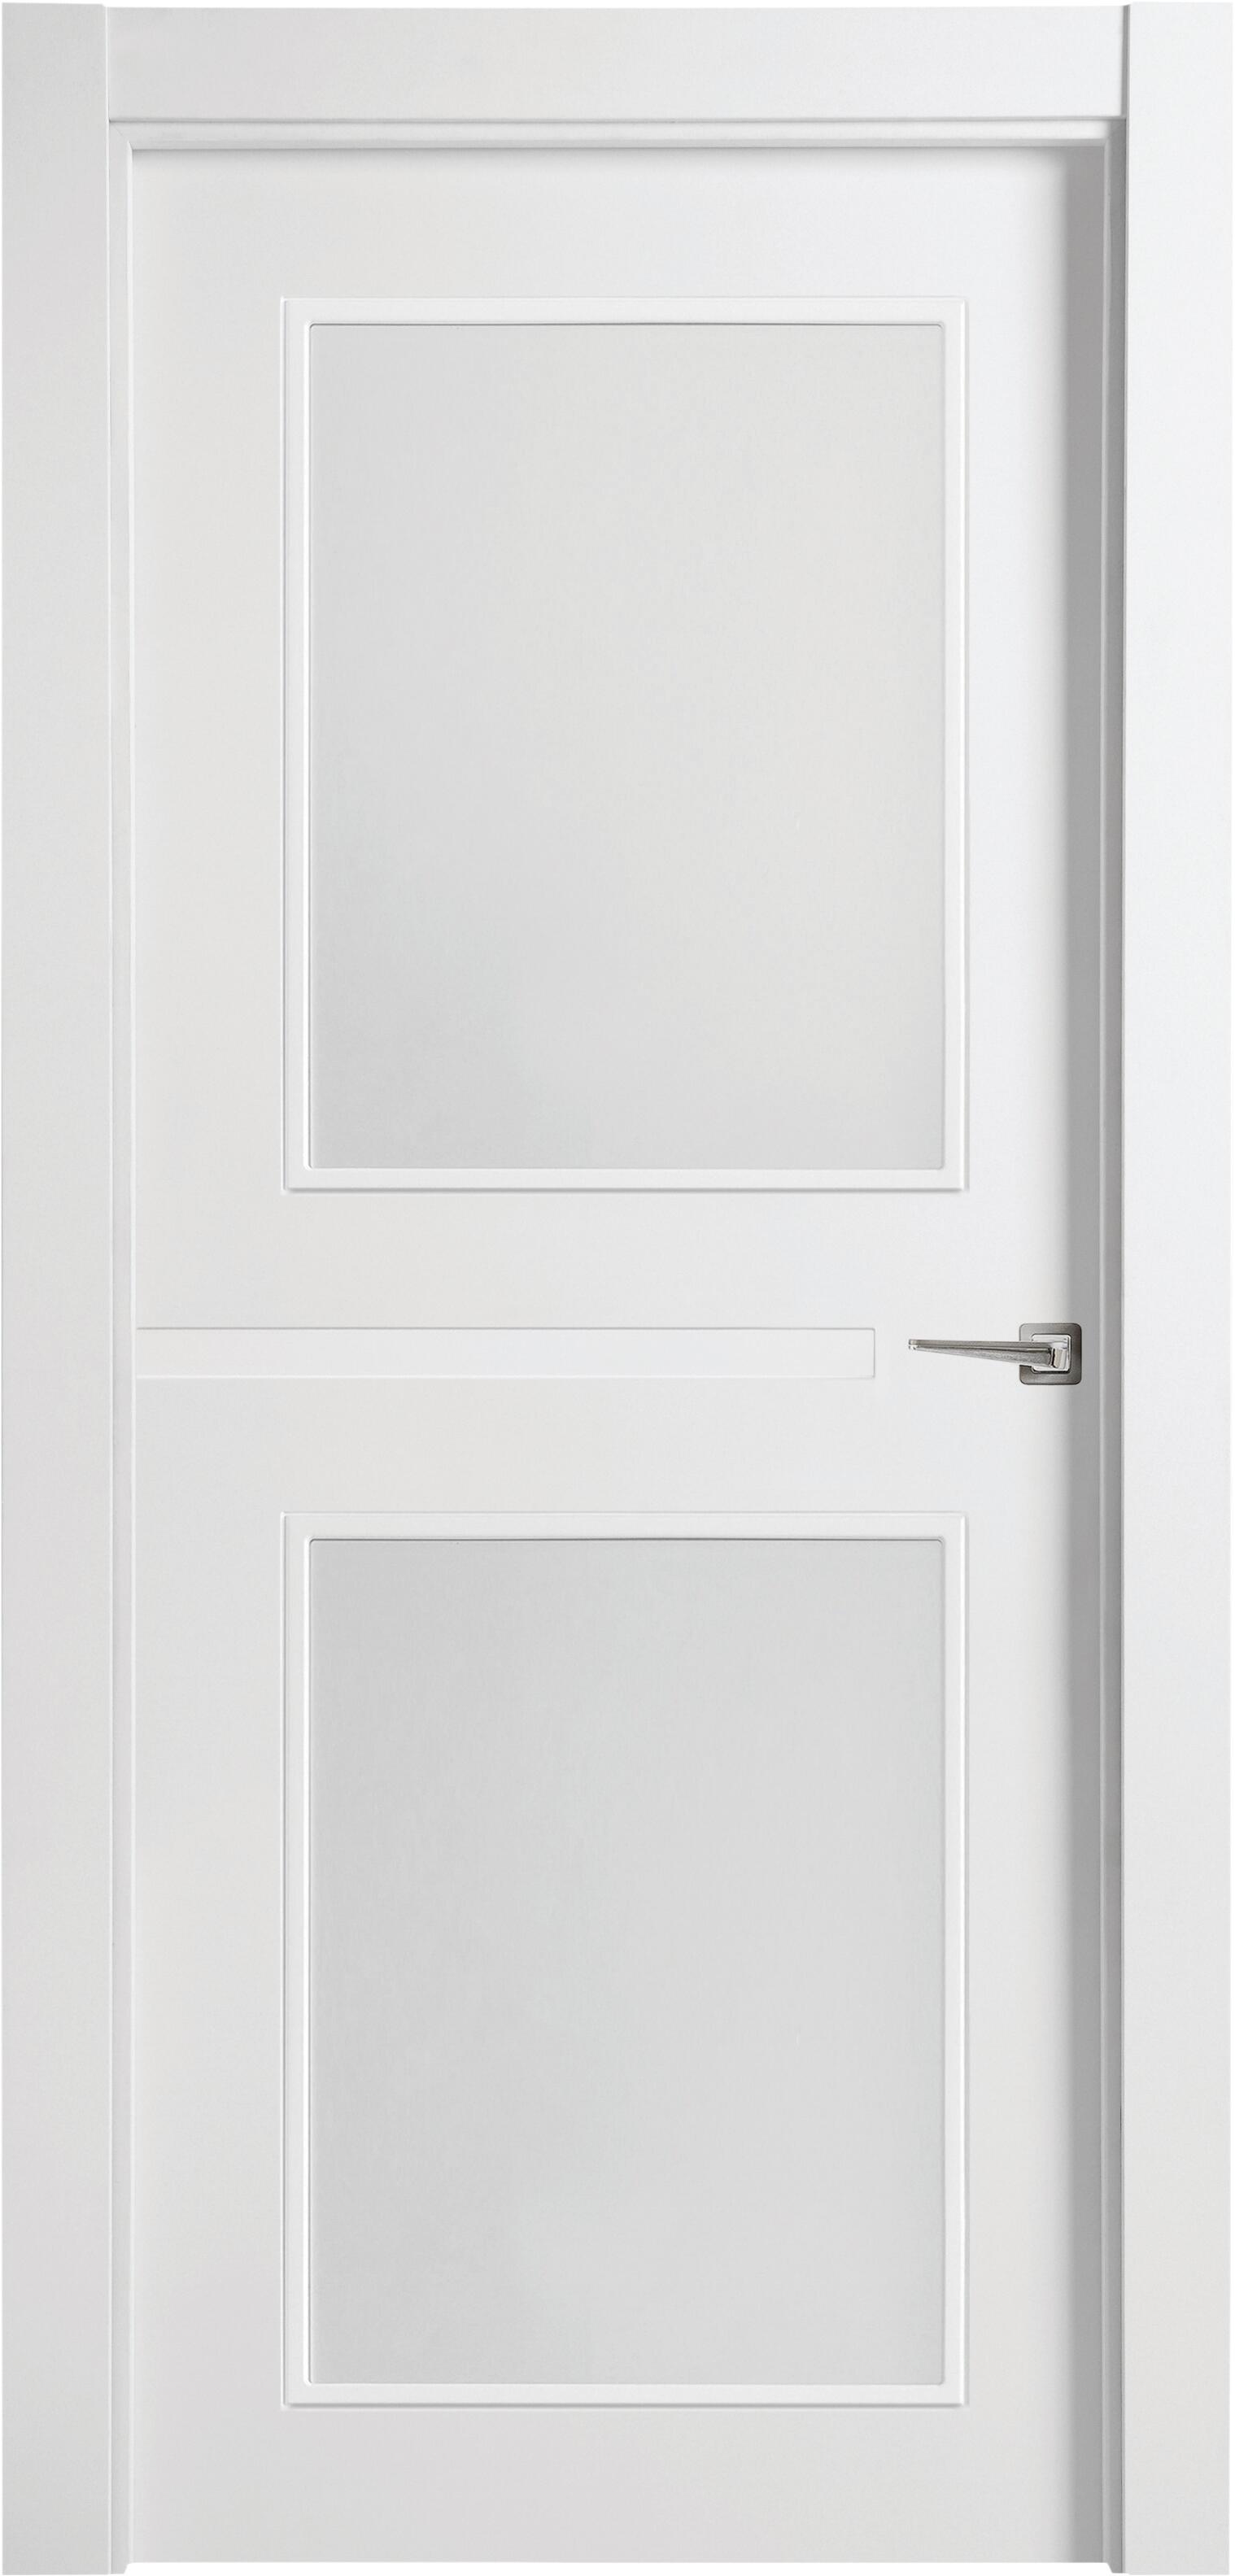 Puerta denver blanco apertura izquierda con cristal de 9x92,5cm